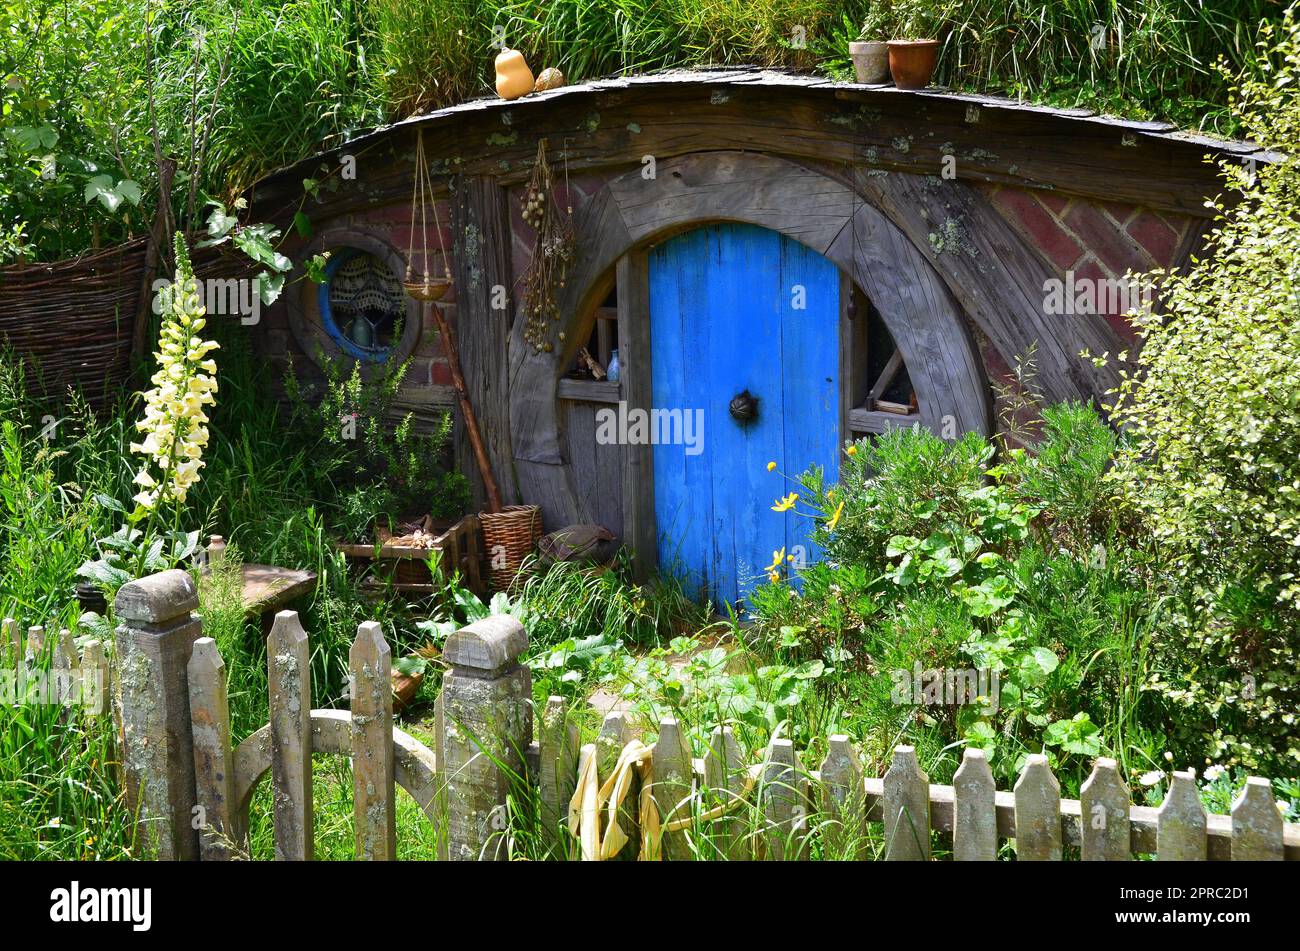 Hobbiton Movie Set and Hobbiton Homes in New Zealand Stock Photo